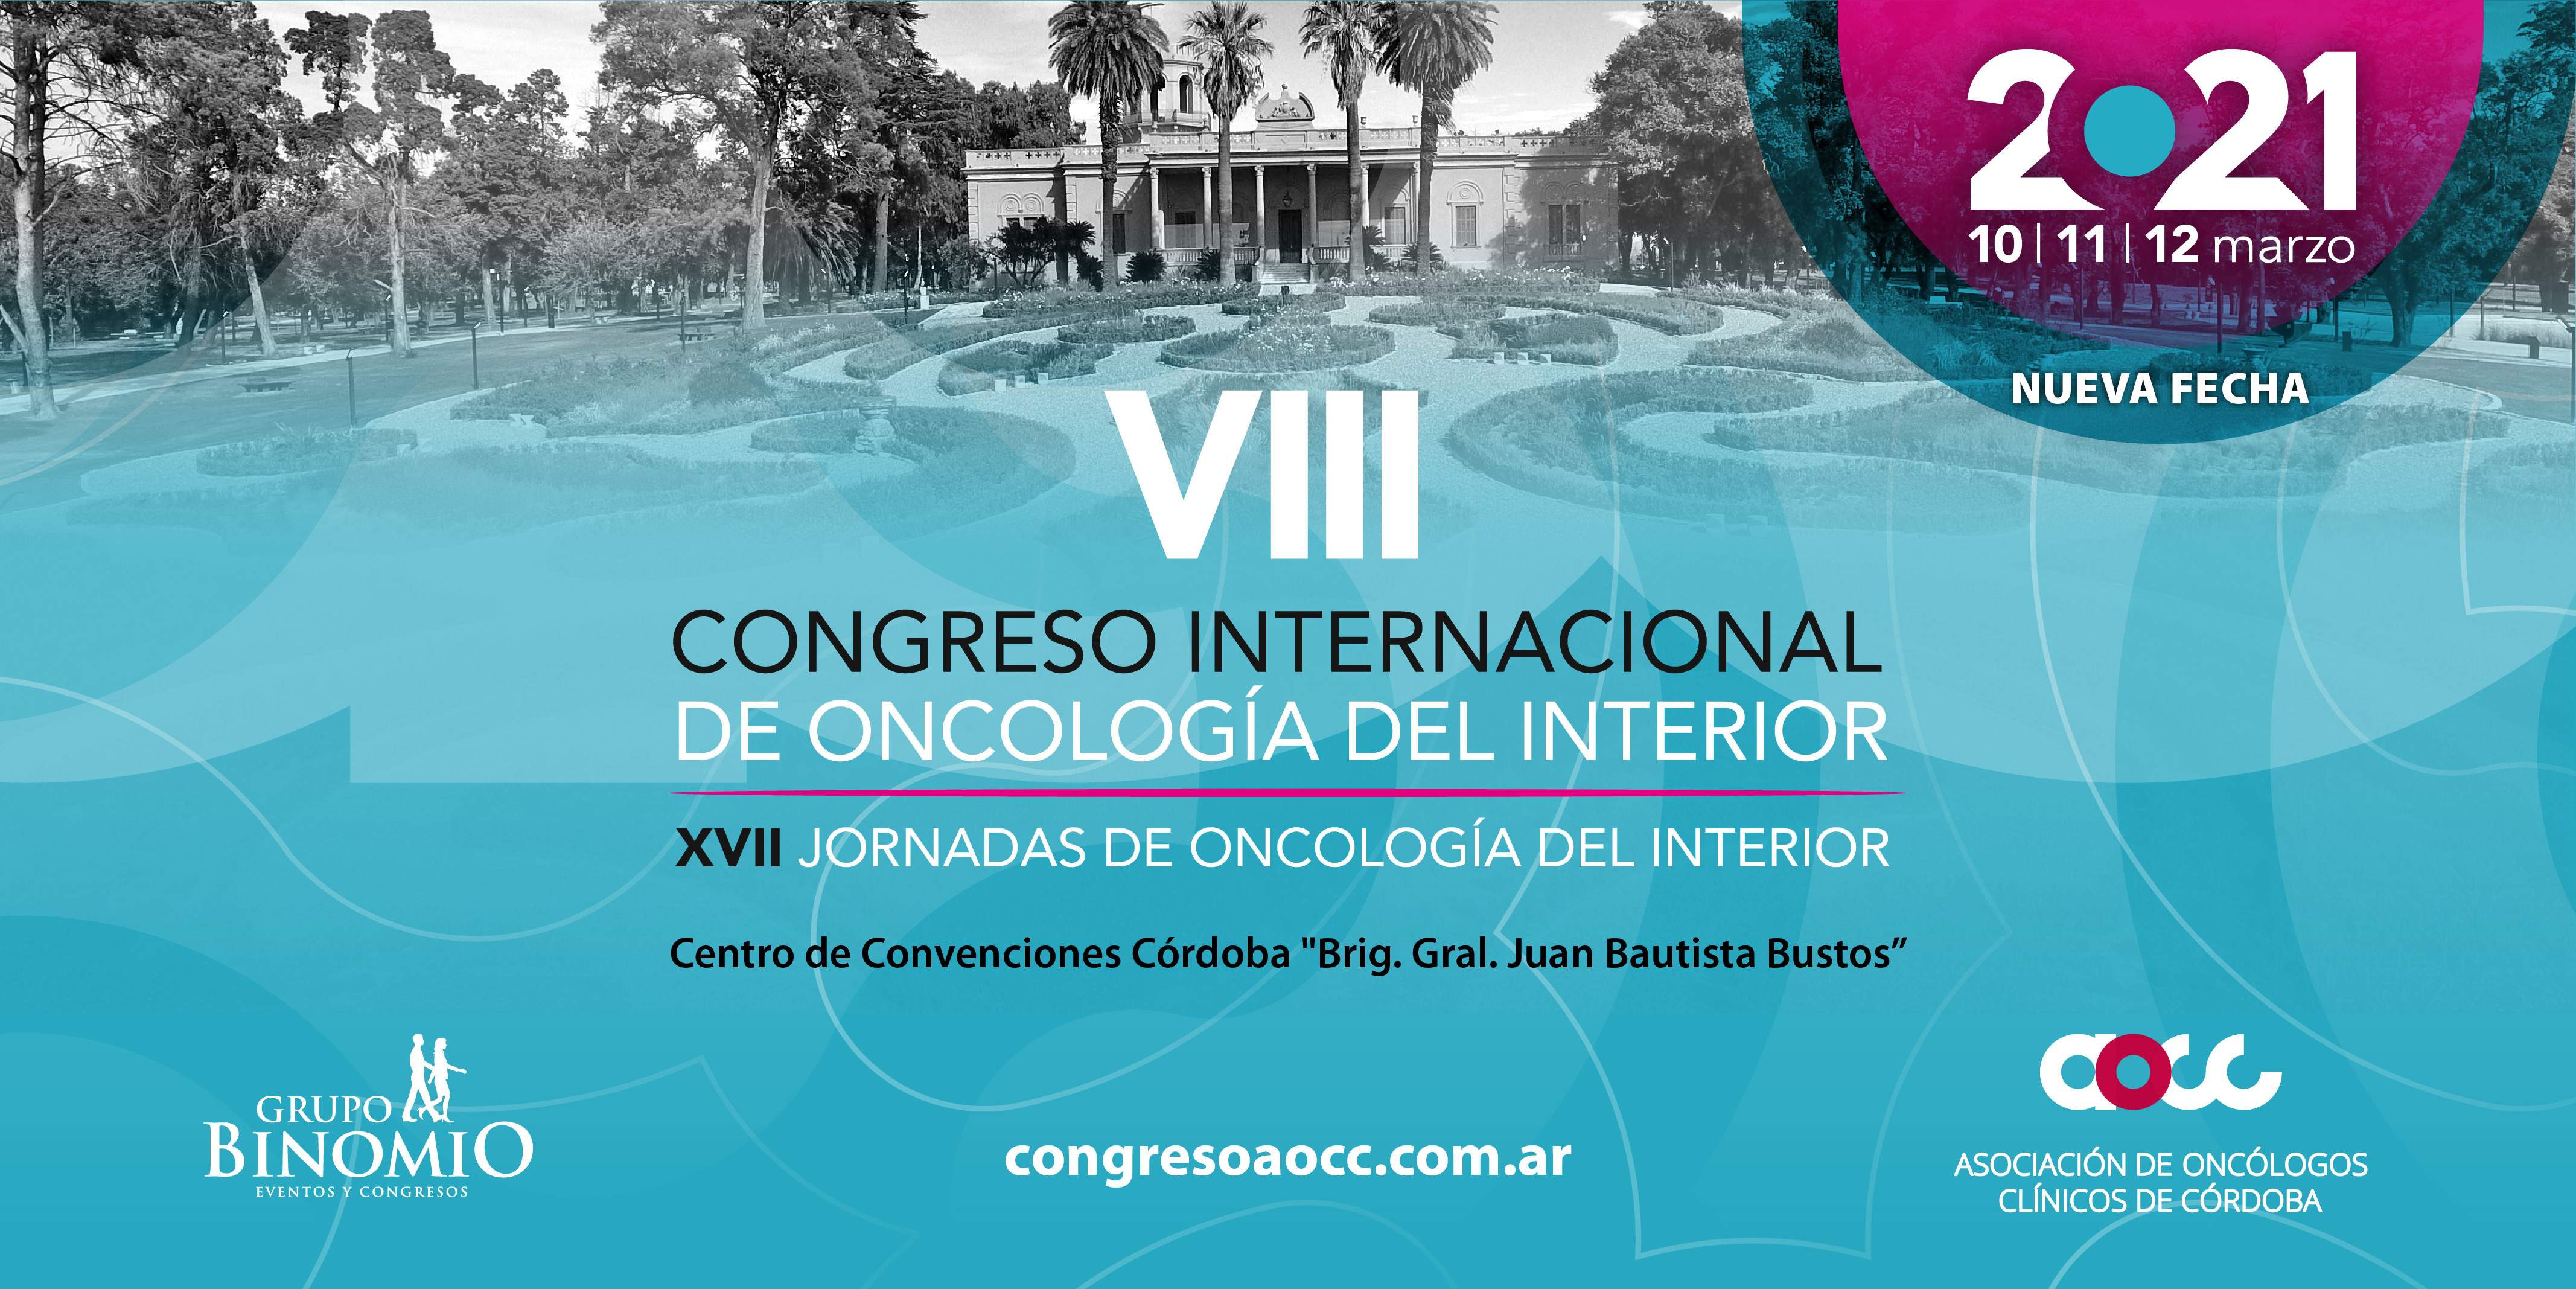 El Congreso Internacional de Oncología del Interior se realizará en marzo del 2021